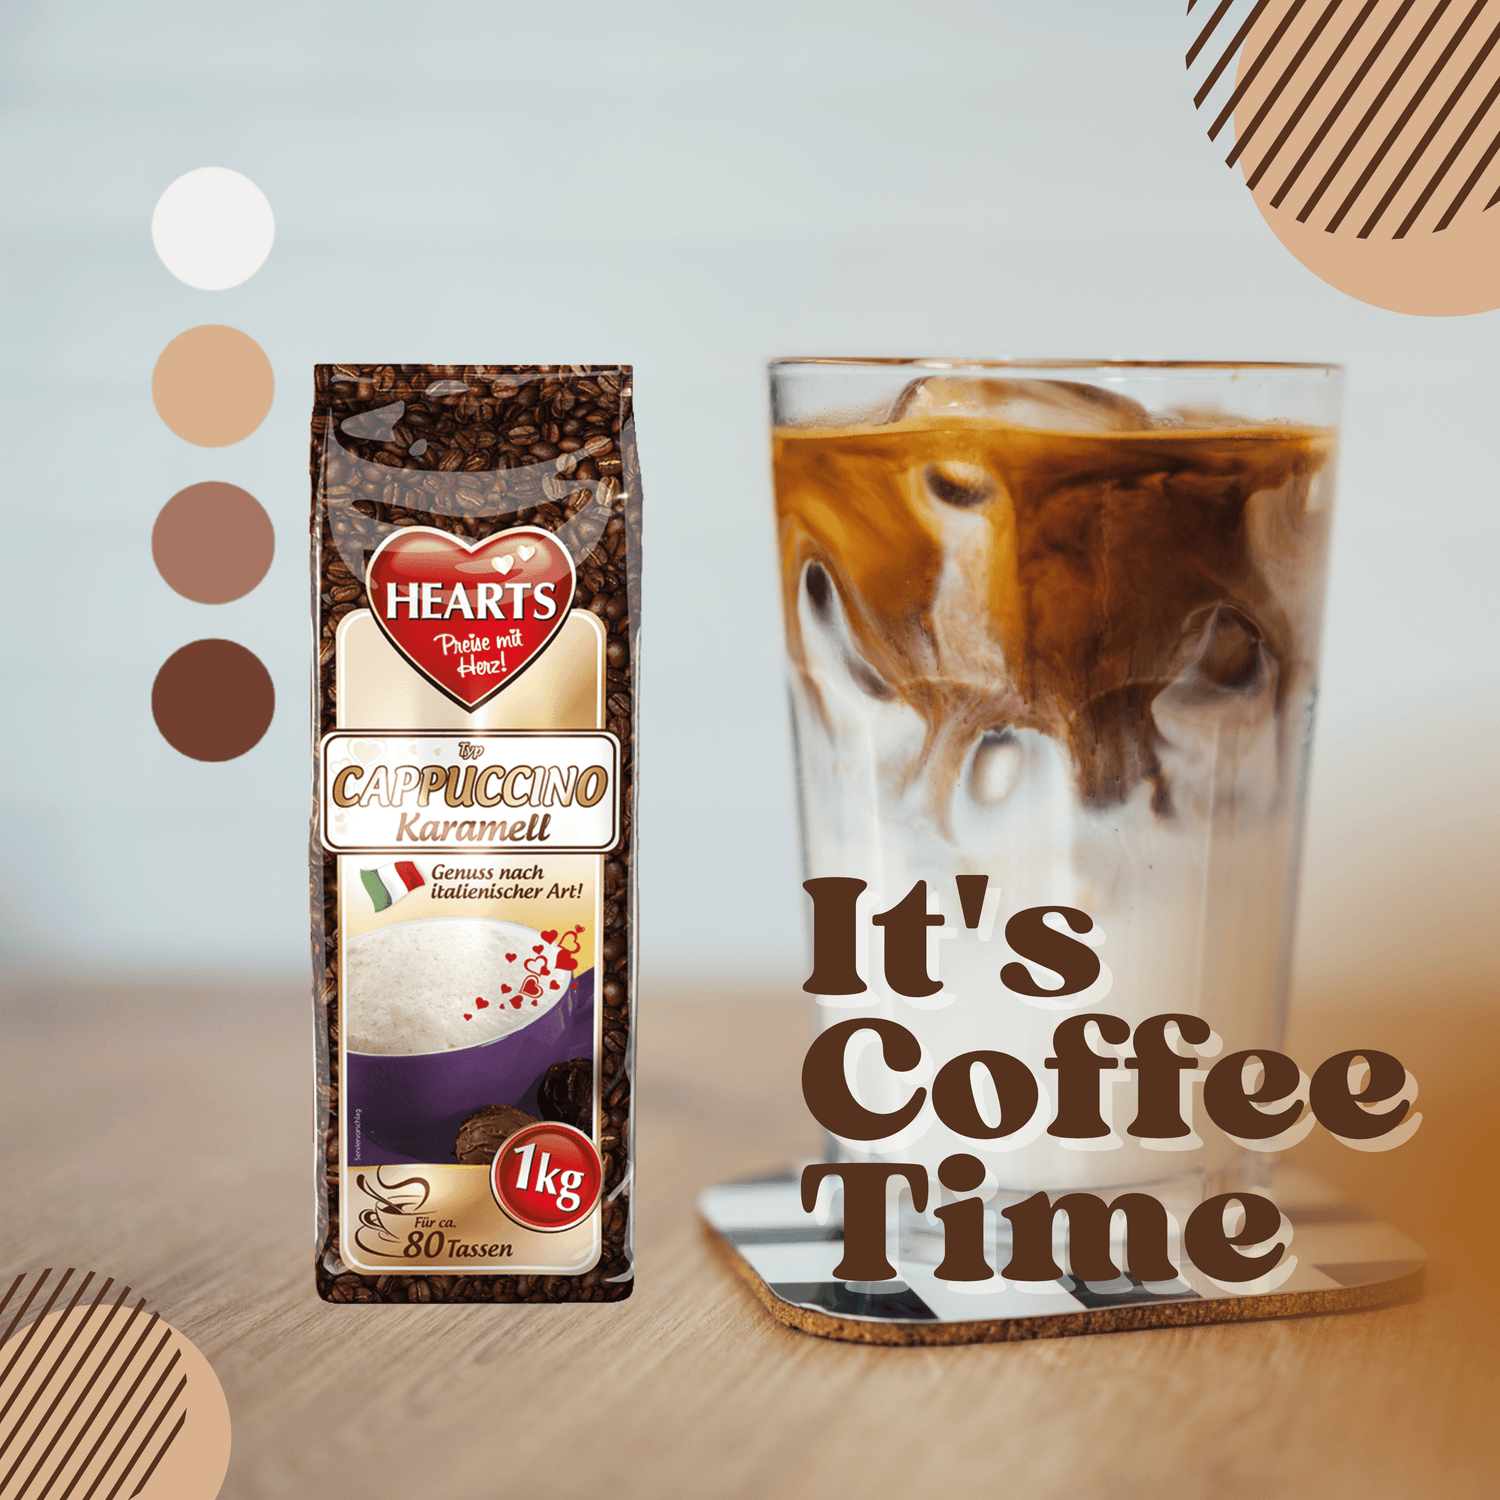 Its coffe time werbebild für hearts cappuccino karamell mit leckerem inhalt für jede gelegenheit reicht für 80 tassen